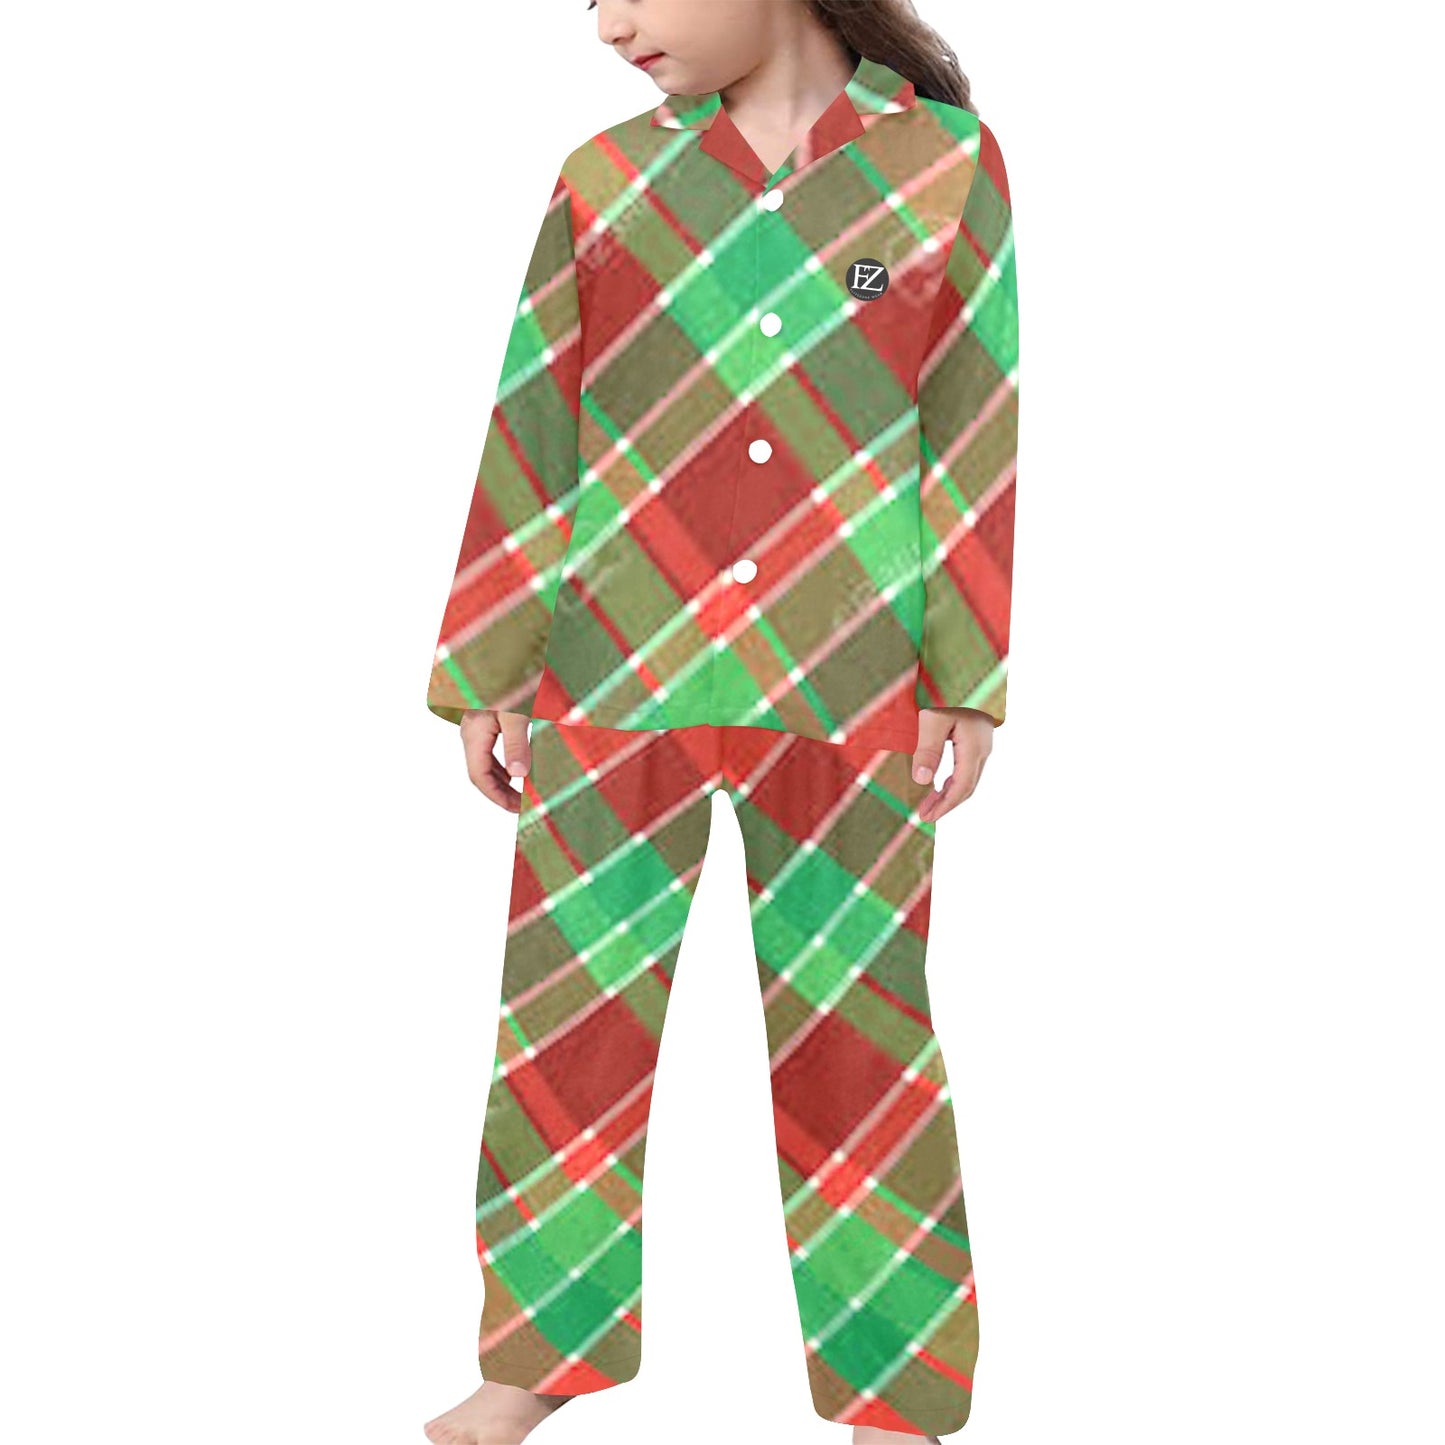 fz kids christmas pyjamas